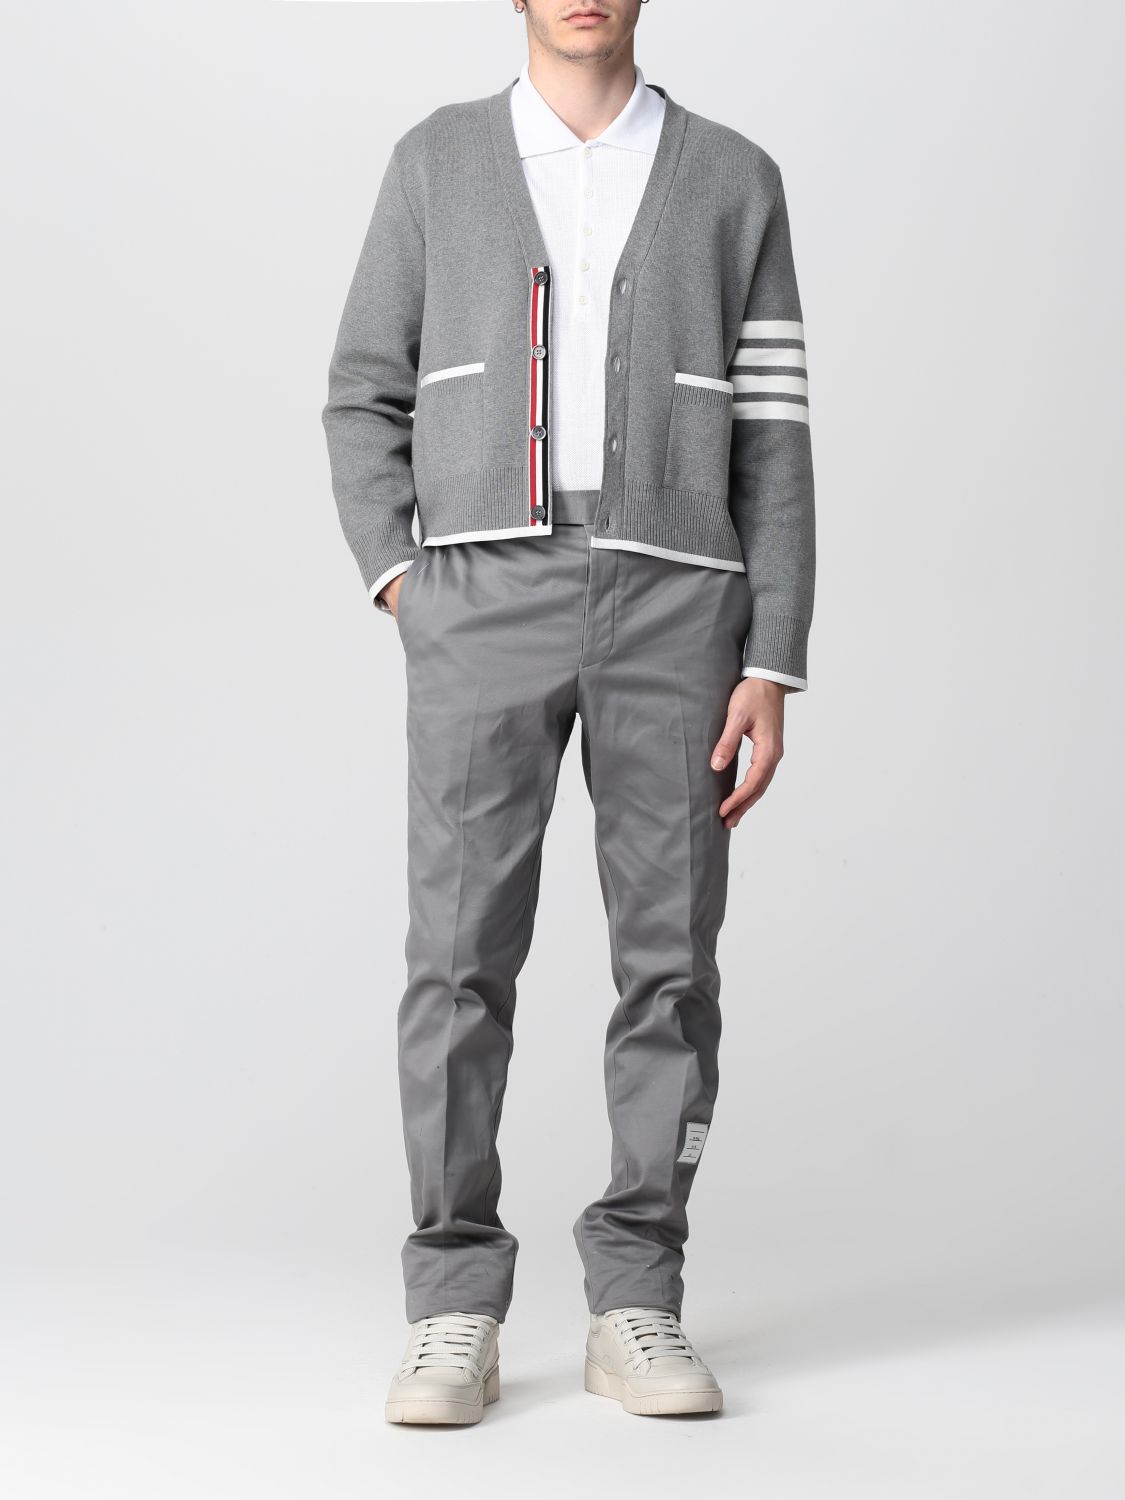 Max Toney 2014新款时尚 气质立领男士羊毛衫 针织开衫男 外套822_zhaolanlan521